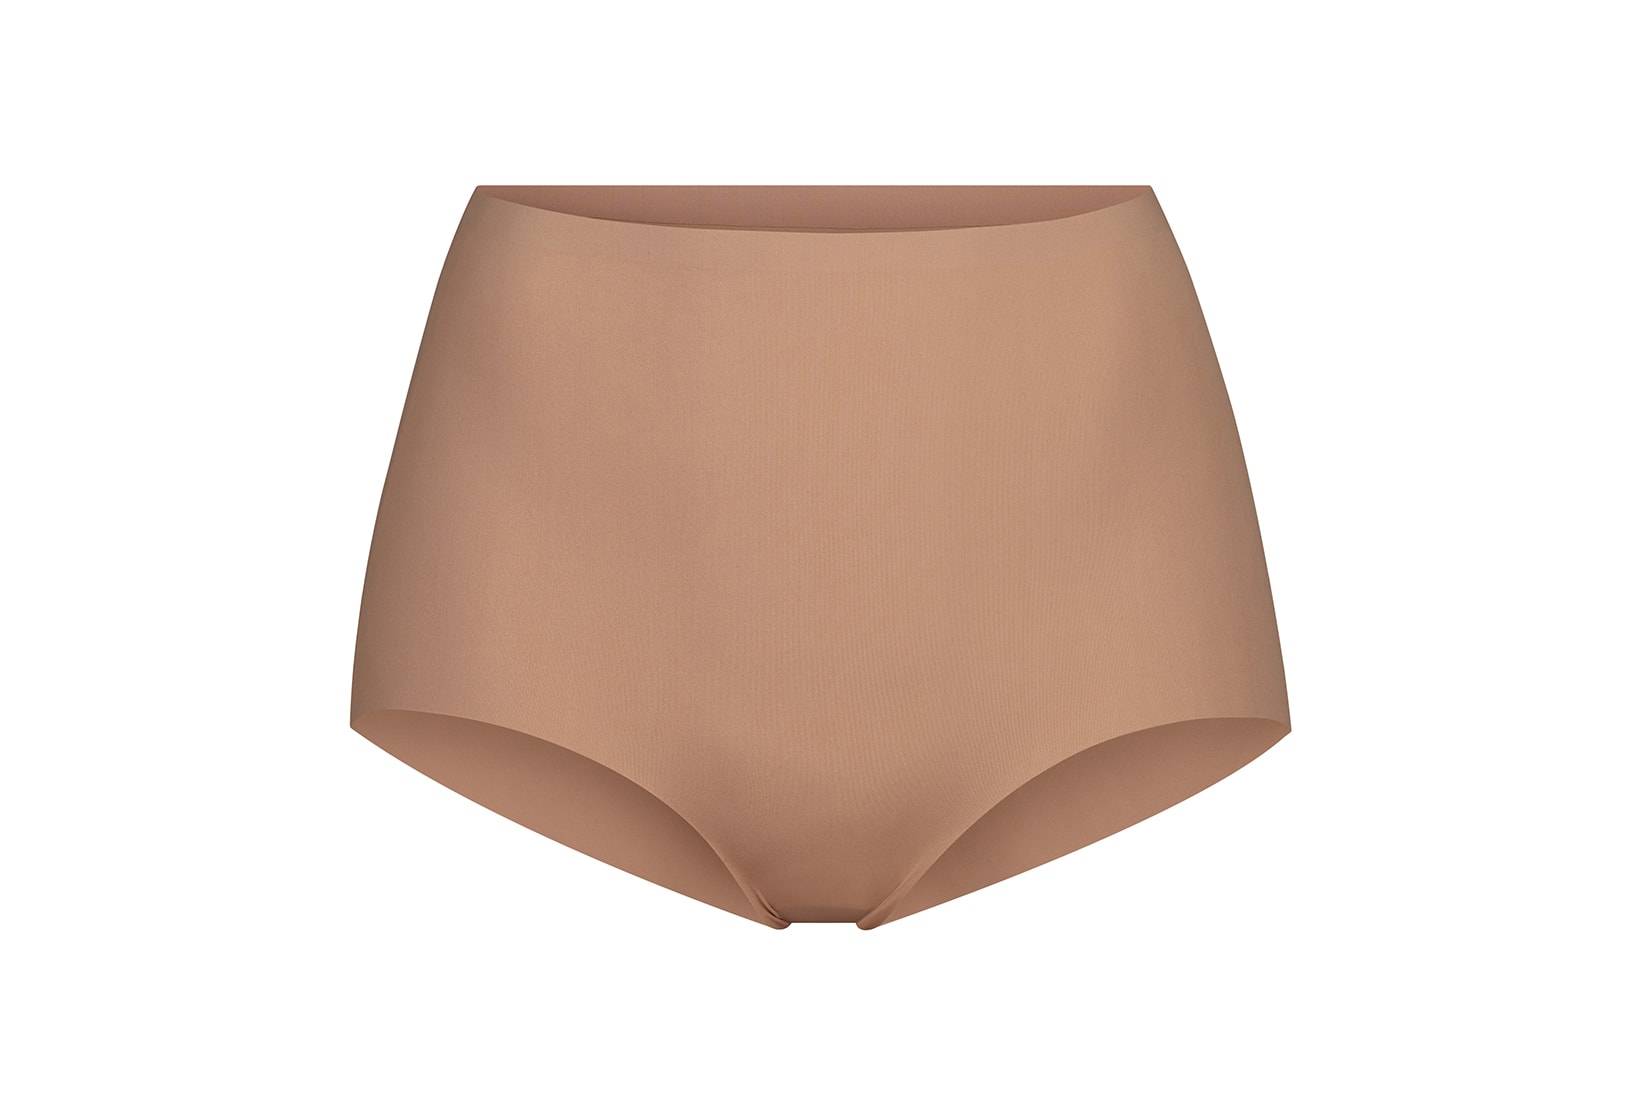 kim kardashian skims smooth essentials collection underwear shapewear tank top thong brief 